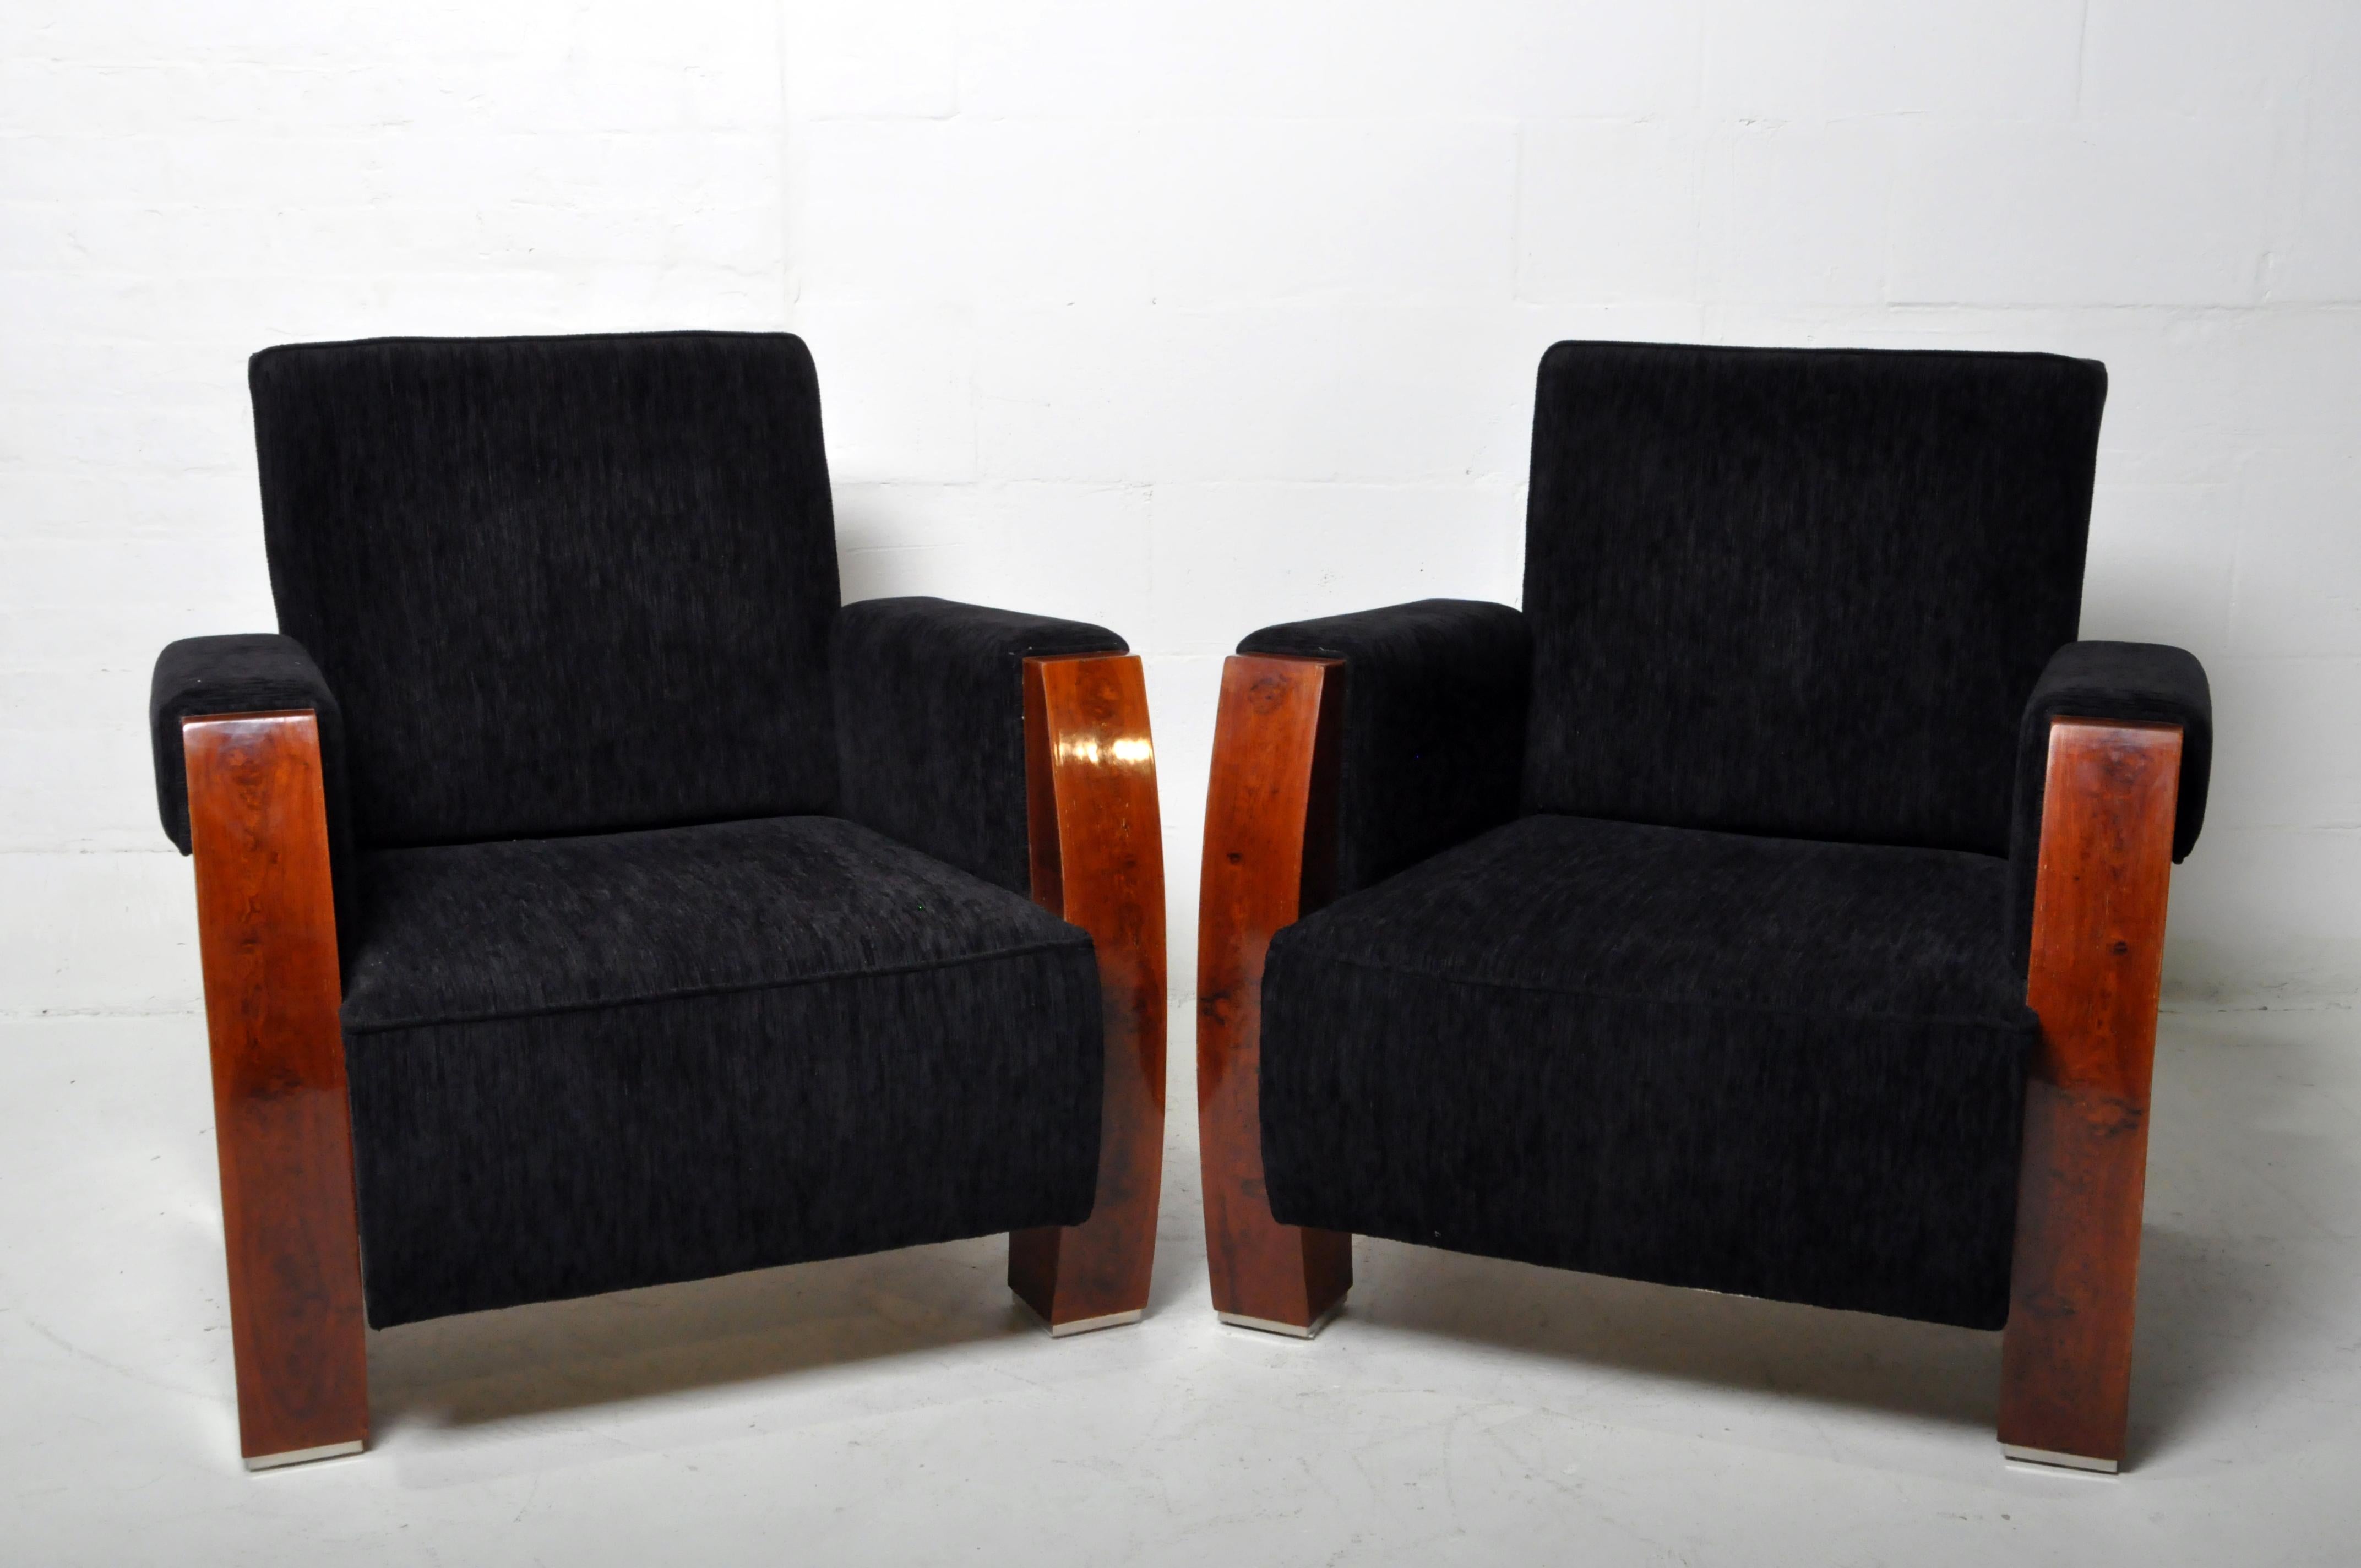 Une paire de fauteuils de style Mid-Century hongrois en placage de noyer et tapisserie en chenille. Depuis l'ère Biedermeier, les fabricants de meubles hongrois sont particulièrement habiles avec les placages de bois. Ces chaises élégantes datent